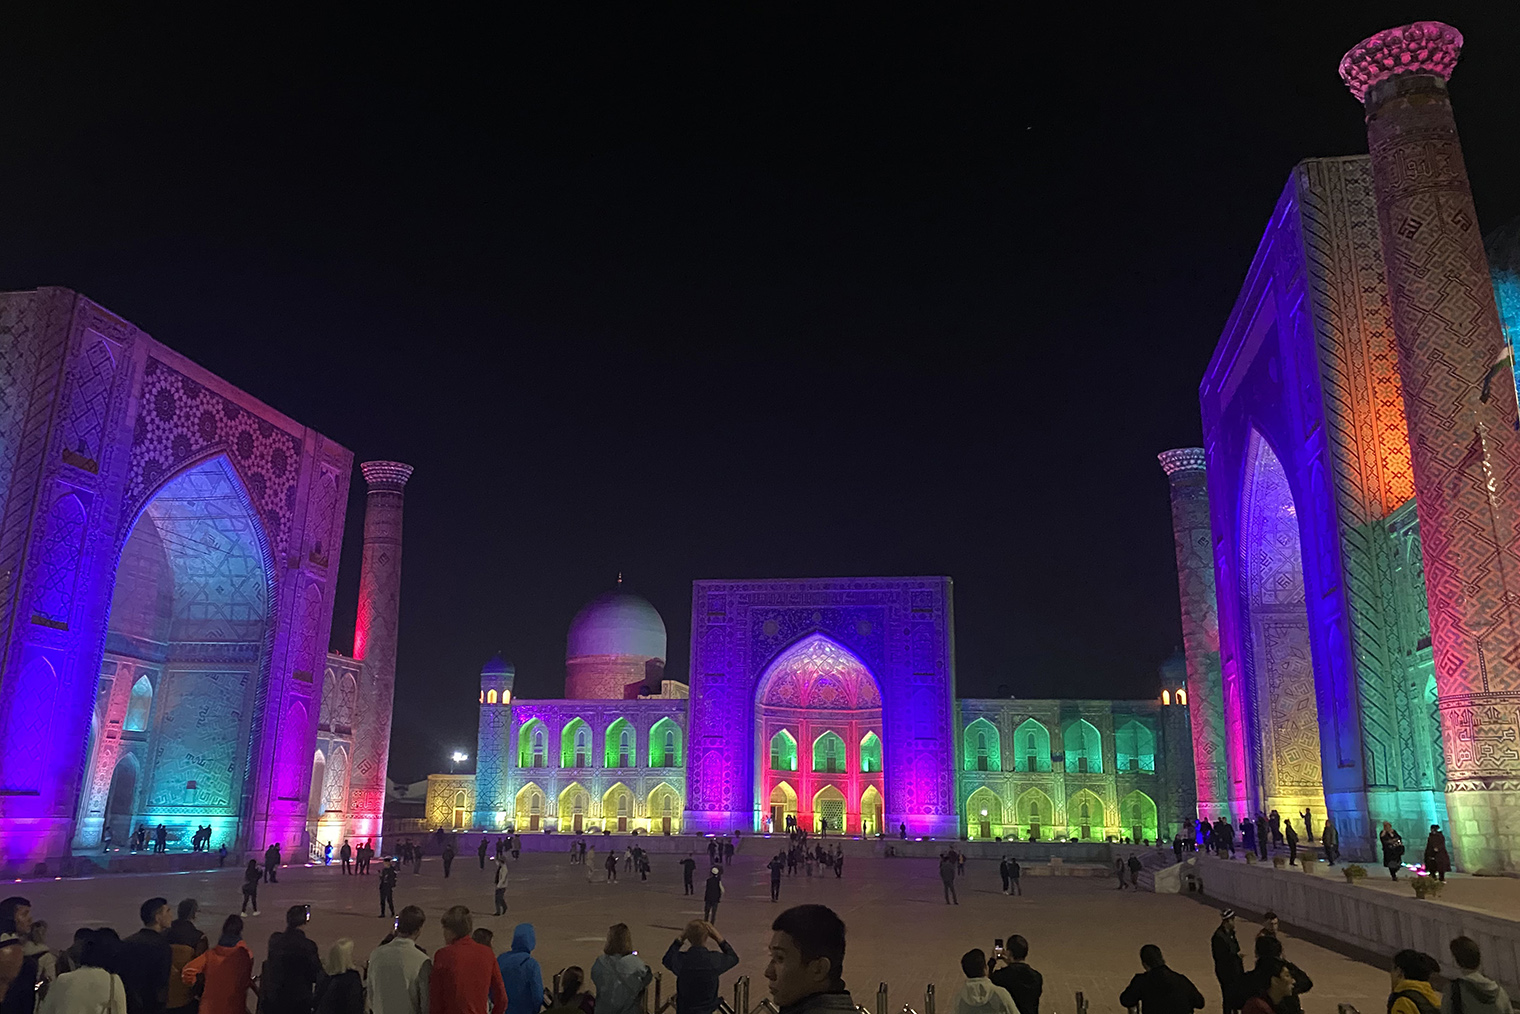 Вечером на площади Регистан включают разноцветную подсветку и национальную музыку. Шоу начинается в 20:00, его видно со смотровой площадки. Билеты покупать не нужно